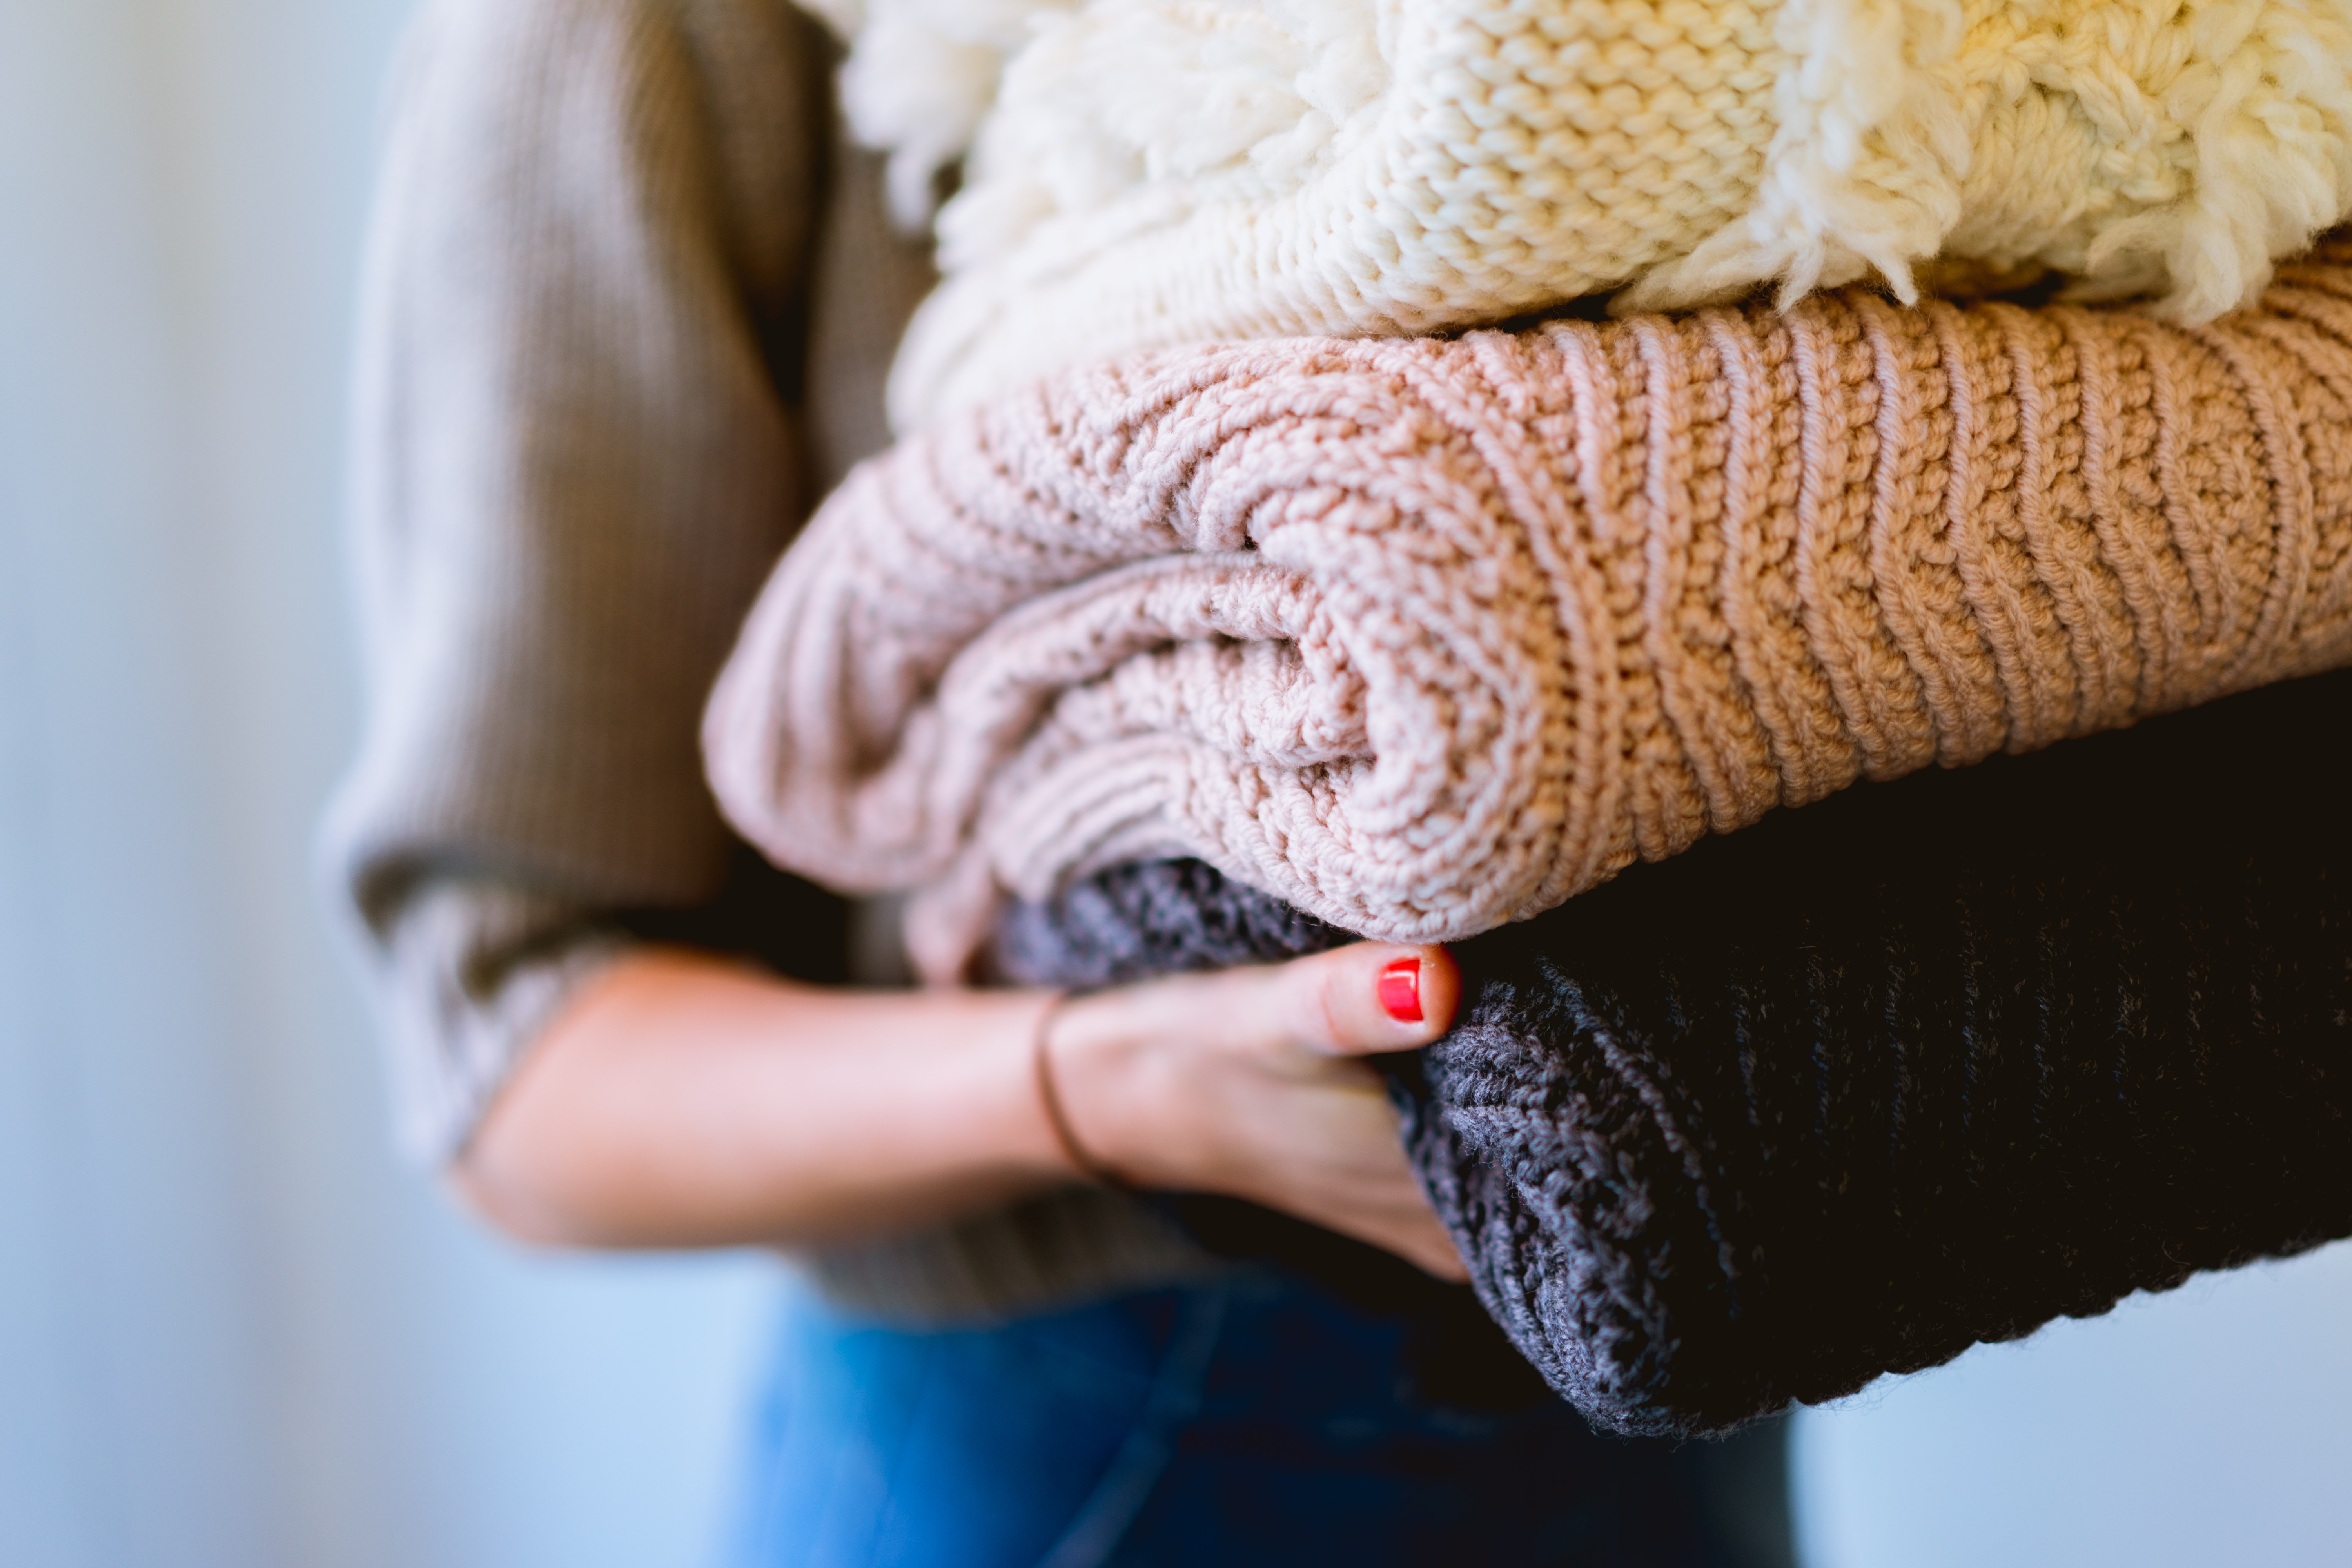  14 truques incríveis para deixar sua casa mais organizada. Acima: mulher segura três suéteres de lã dobrados (Foto: Dan Gold//Unsplash)